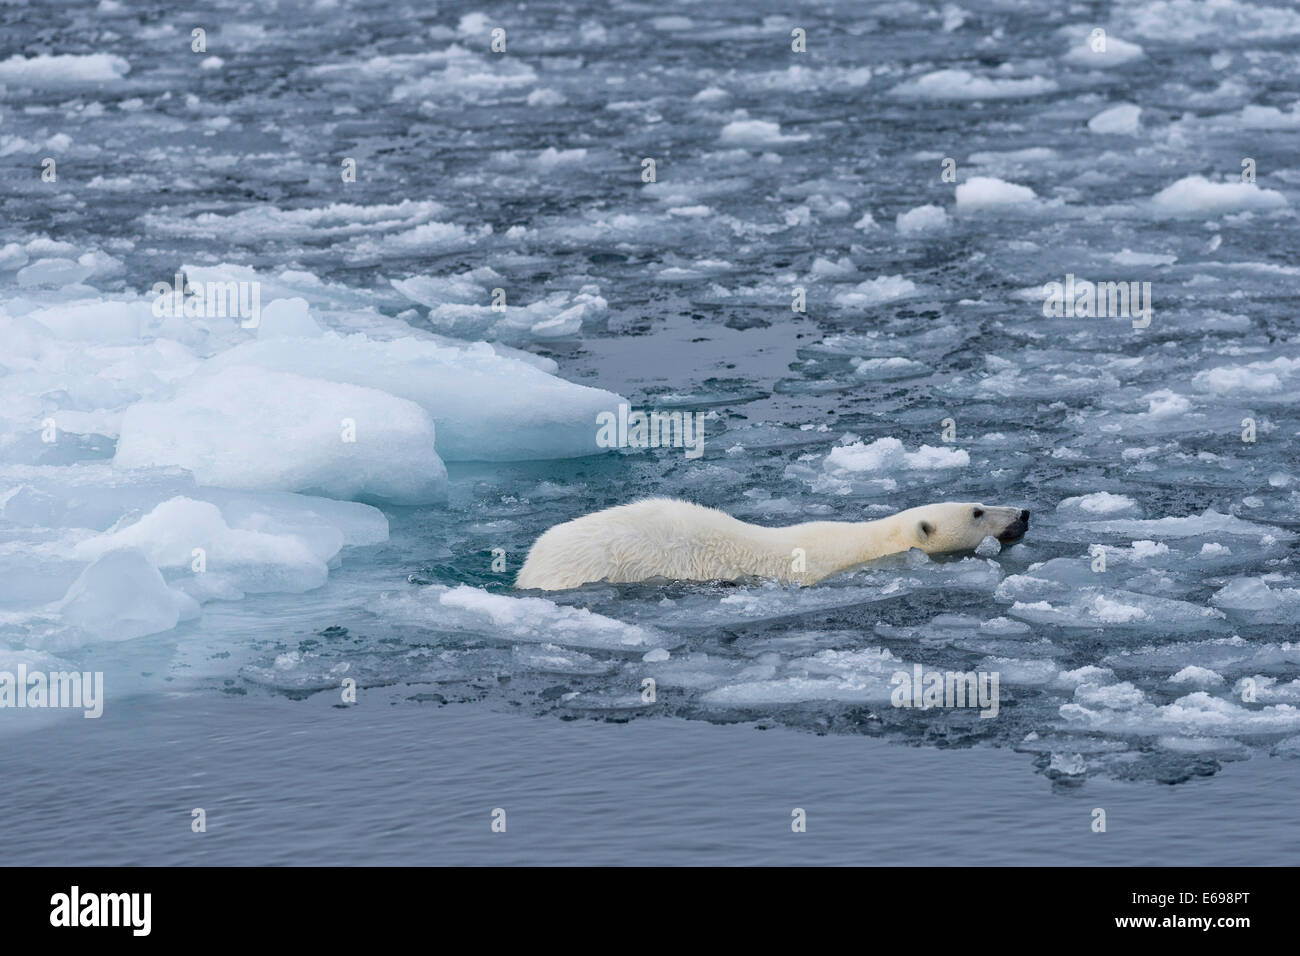 Orso polare (Ursus maritimus) nuotare nel pack di ghiaccio, Spitsbergen, isole Svalbard Isole Svalbard e Jan Mayen, Norvegia Foto Stock